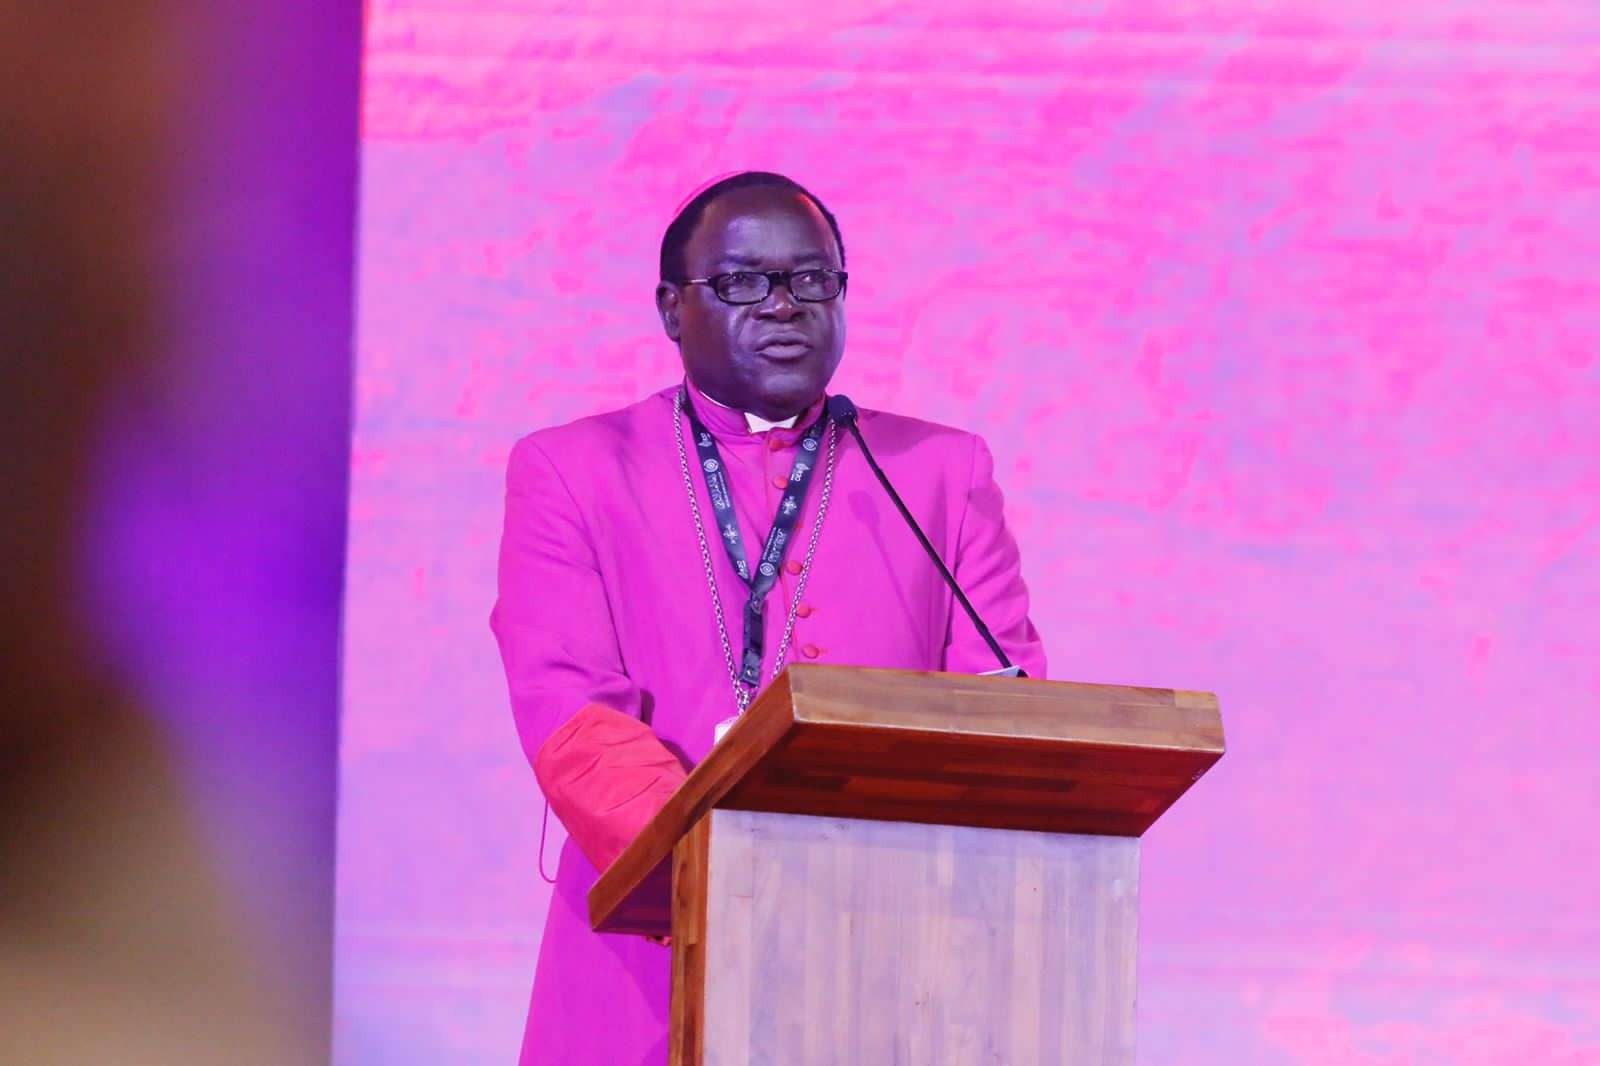 Matthew Hassan Kukah, Uskup Katolik Sokoto, Nigeria, saat menjadi pembicara pada sesi panel keempat di Forum Agama G20 (R20) di Hotel Grand Hyatt, Nusa Dua, Bali, Kamis (3 November 2022).